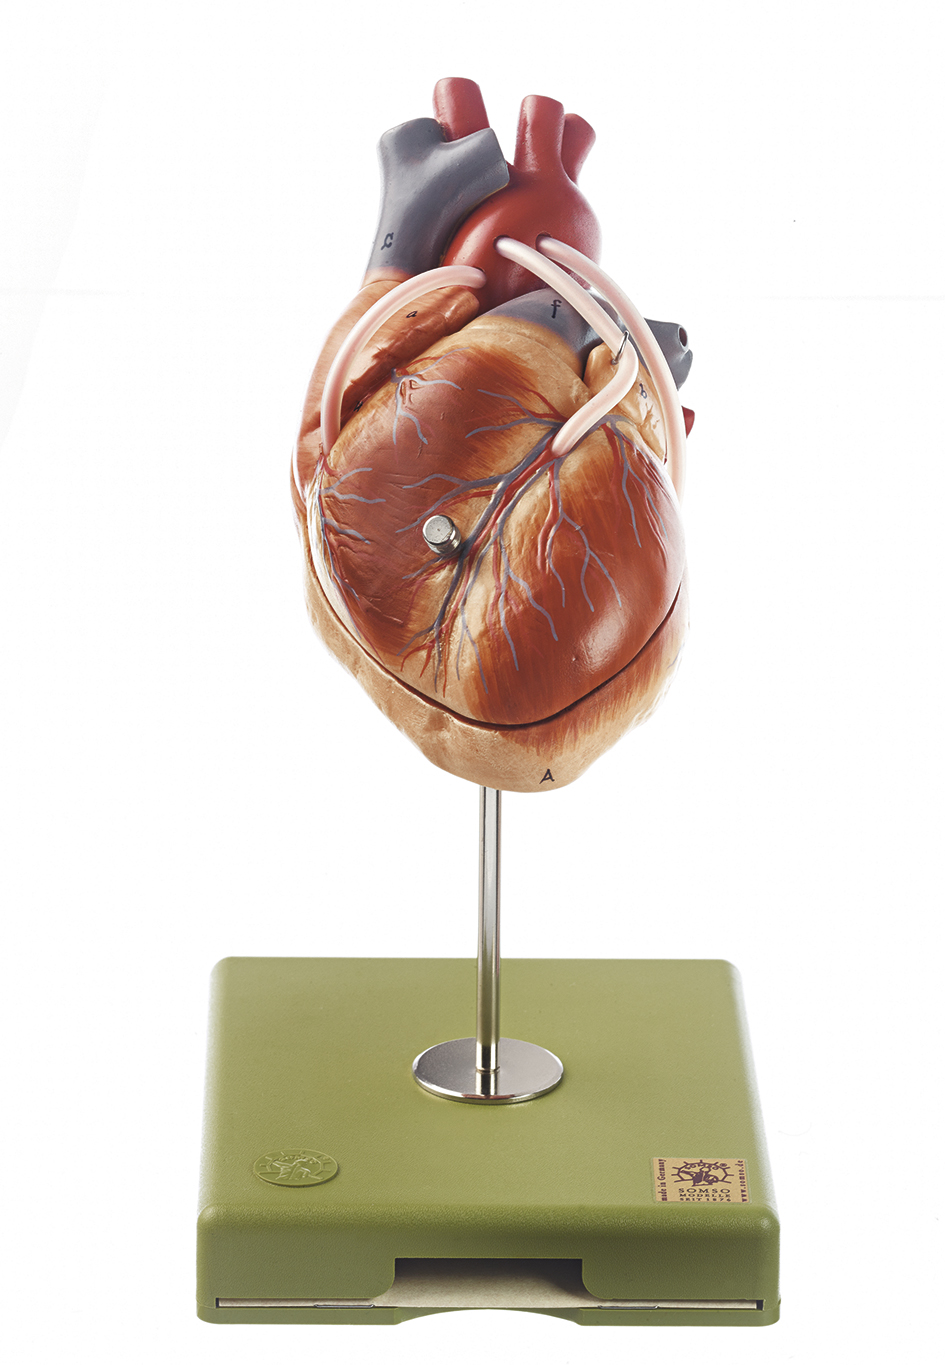 Herzmodell mit Bypassgefäßen (aortakoronarer Venenbypass), Bestellnummer HS 15/1, SOMSO-Modelle